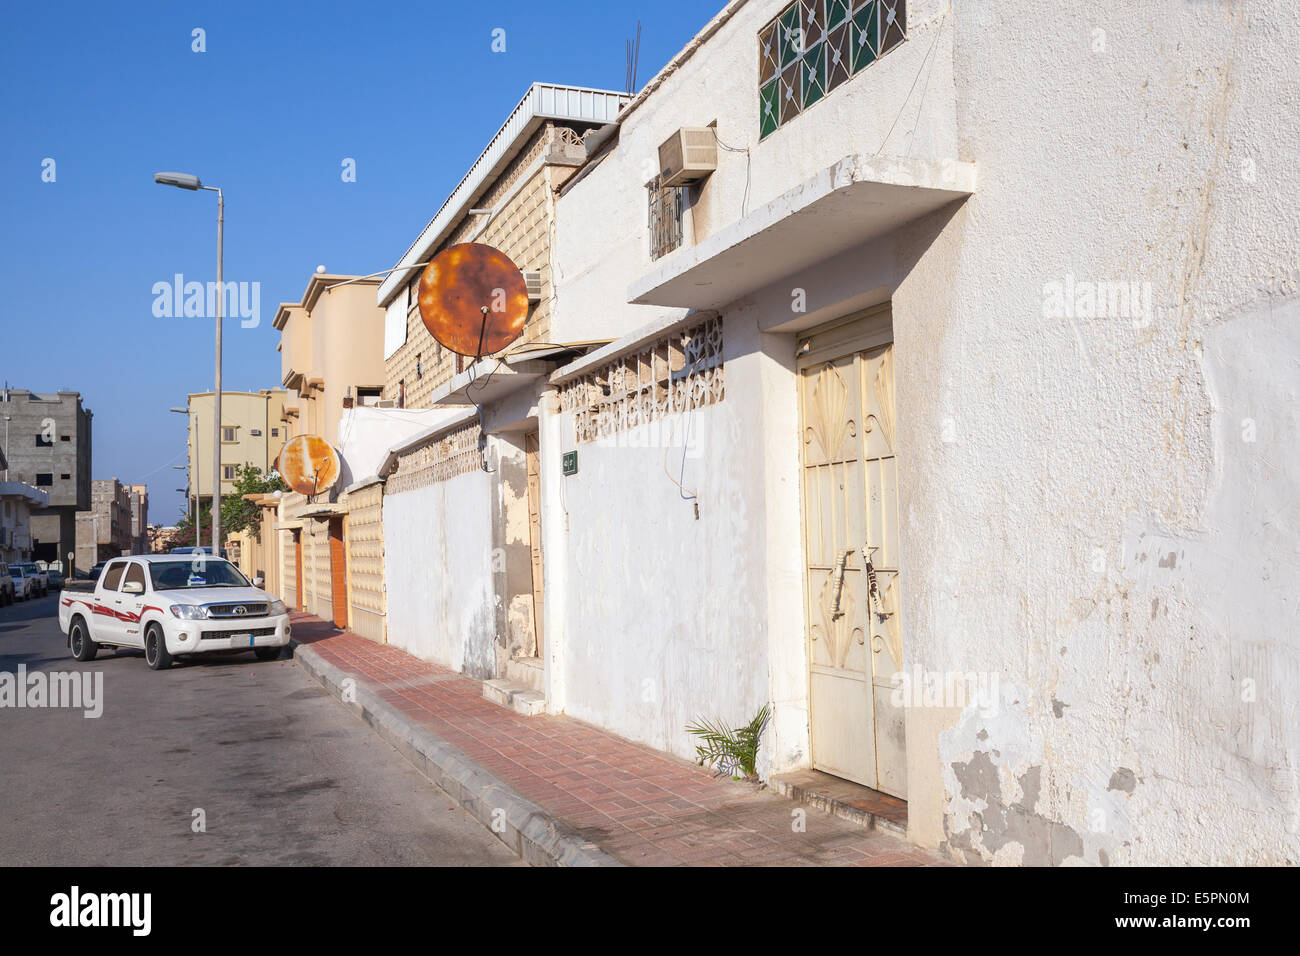 RAHIMA, SAUDI Arabien - 19. Mai 2014: gewöhnliche Straßenansicht mit geparkten Auto und weiße Wände, Saudi Arabien Stockfoto